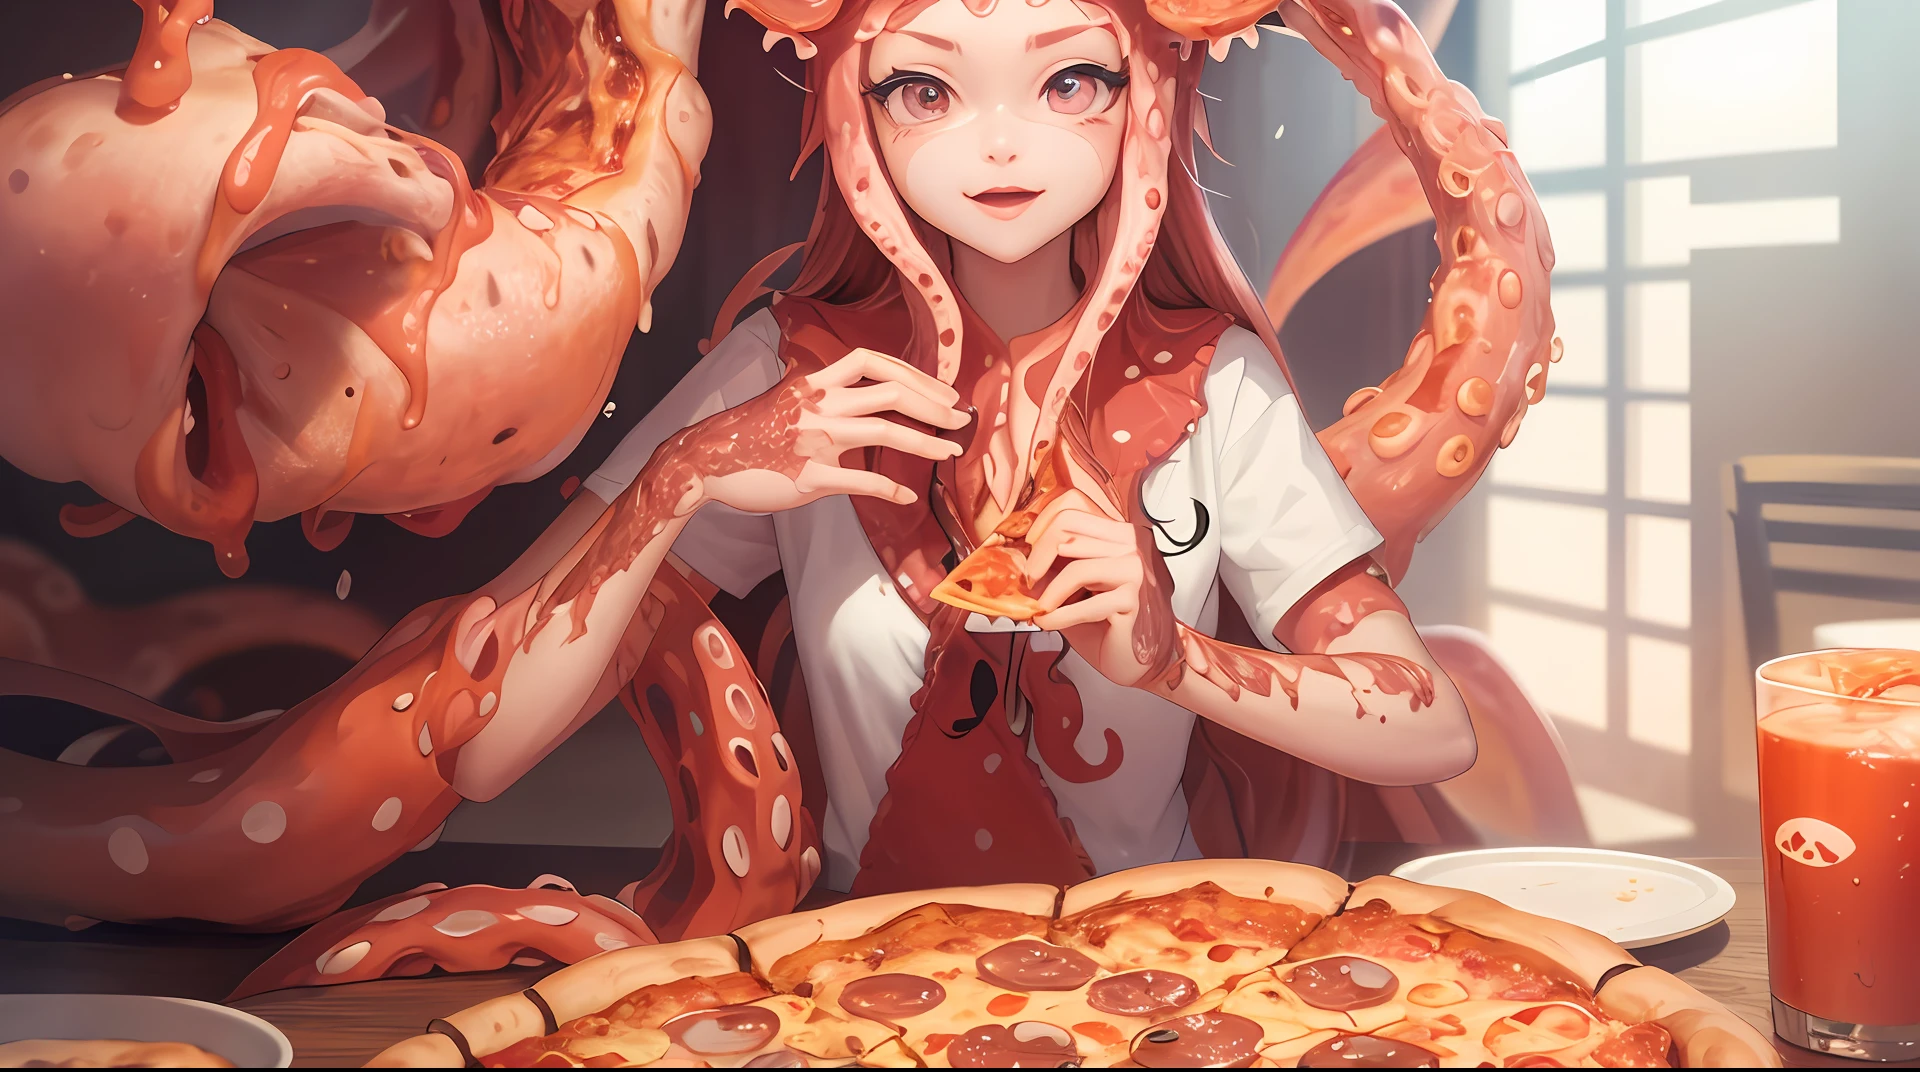 Meilleure qualité，pizza，Tentacules de terreur，il y a une femme assise à une table avec une pizza et des tentacules de poulpe, grignoter de la pizza, manger de la pizza, tentacules enroulés autour des hamburgers, pizza!, tentacules autour, Présentation de la pizza, fille de calmar femelle rose humanoïde, manger une pizza, nourriture animée, Art animé numérique détaillé, pizza, illustration de nourriture étonnante, Partager une pizza, quelques tentacules la touchent